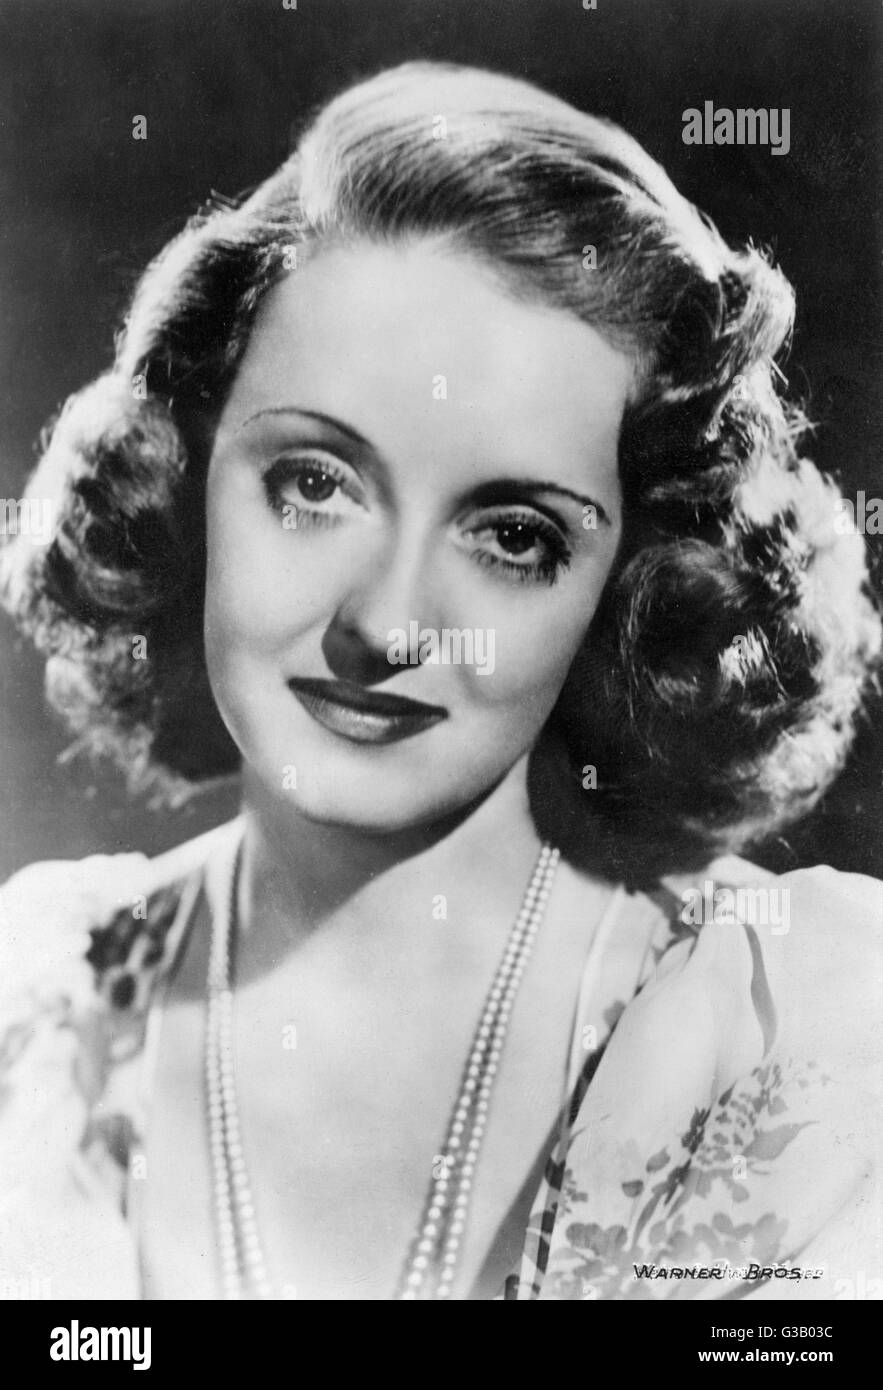 BETTE DAVIS attrice statunitense che indossa una collana di perle data: 1908 - 1989 Foto Stock